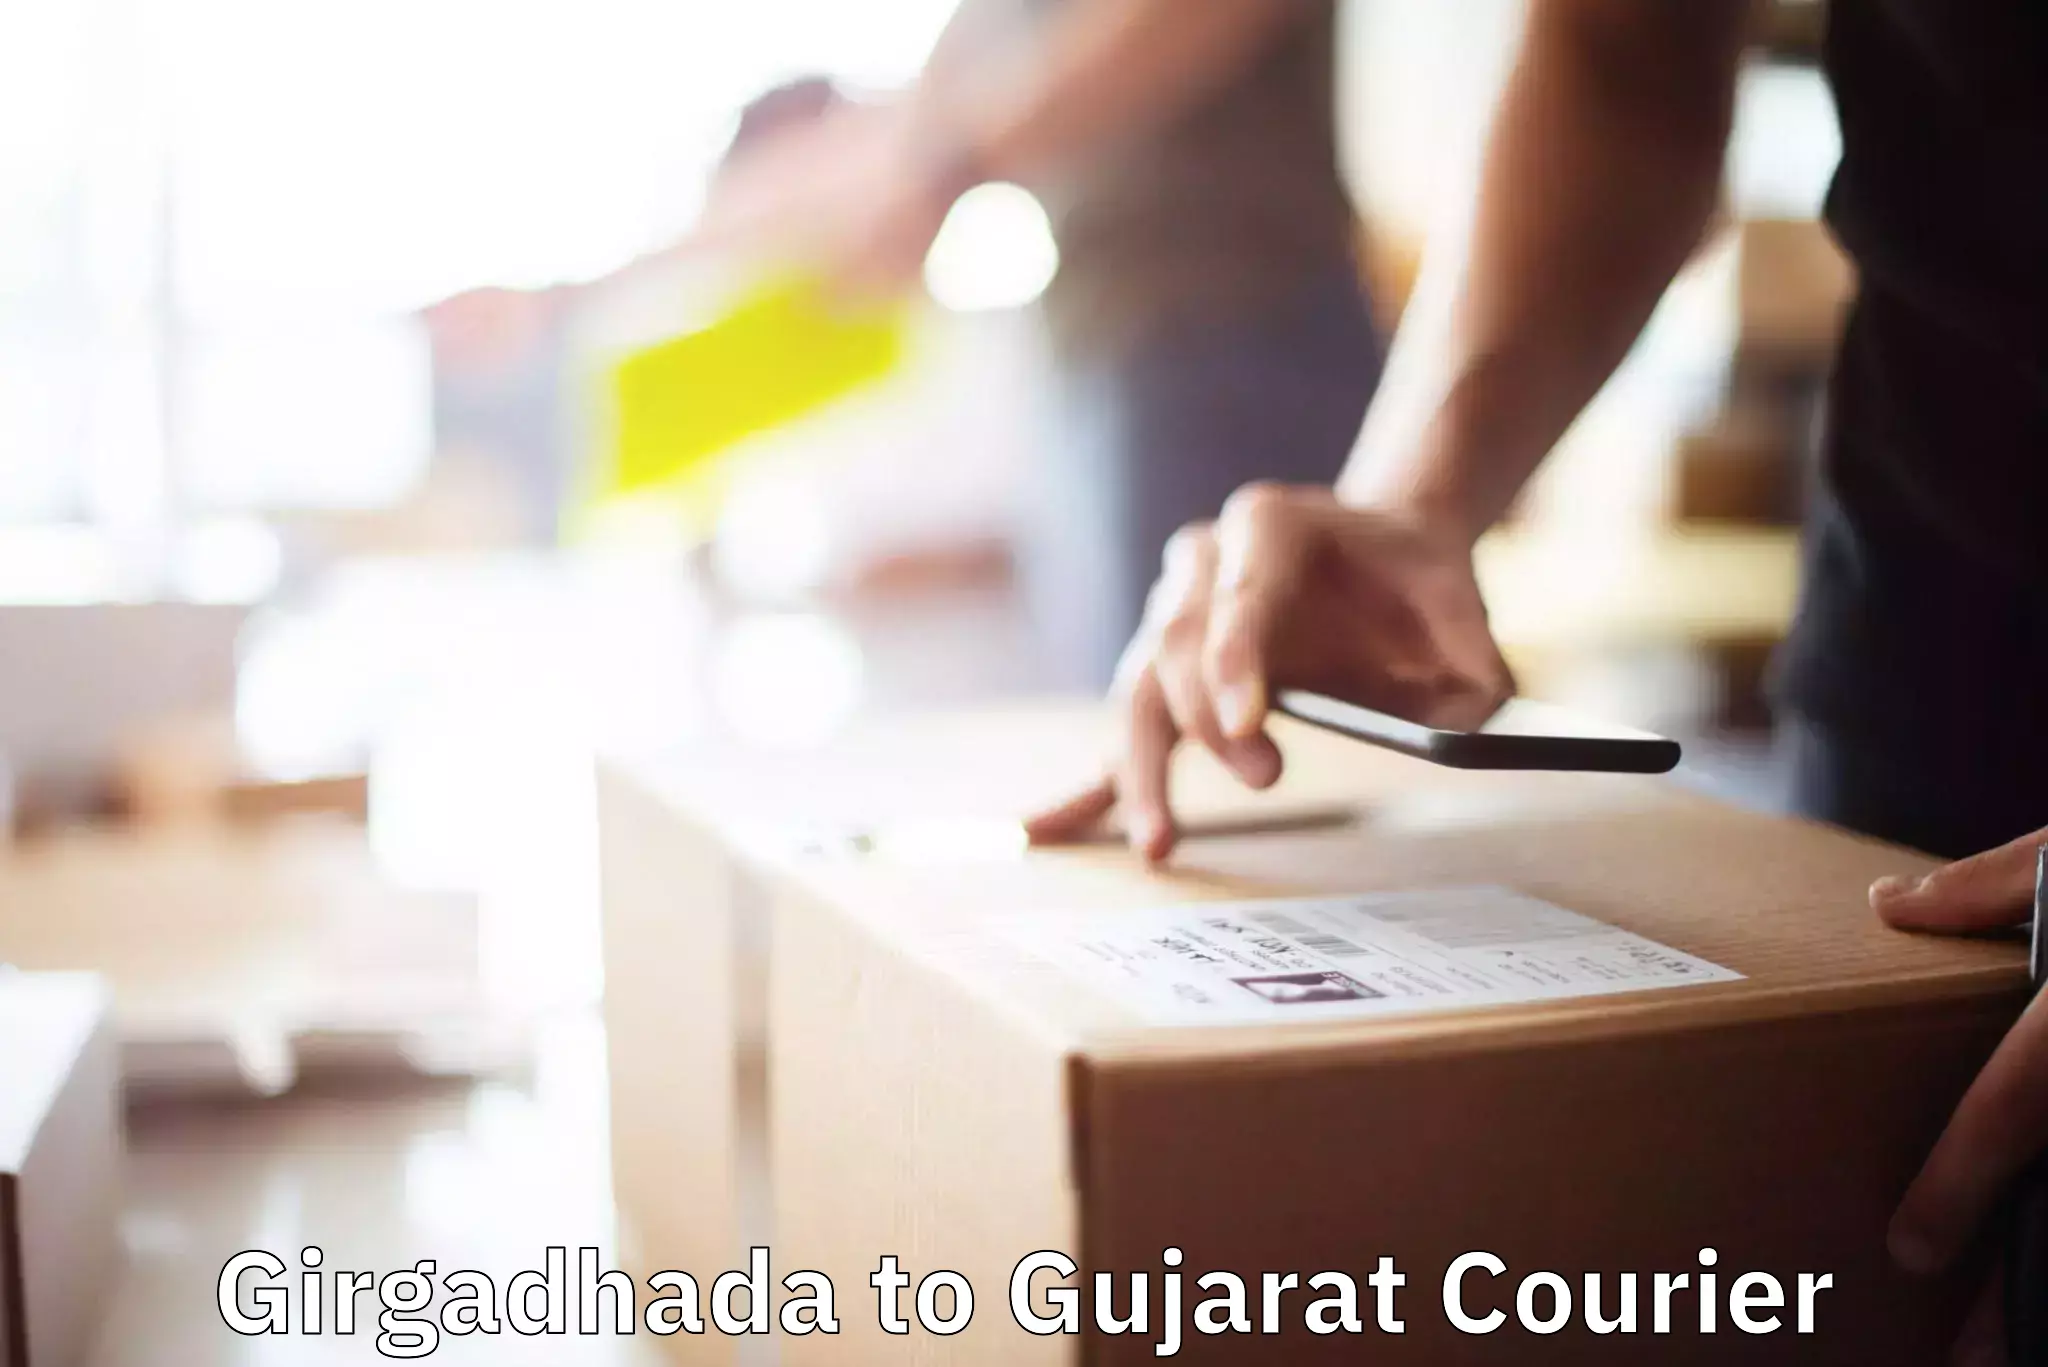 Full-service movers in Girgadhada to Gujarat